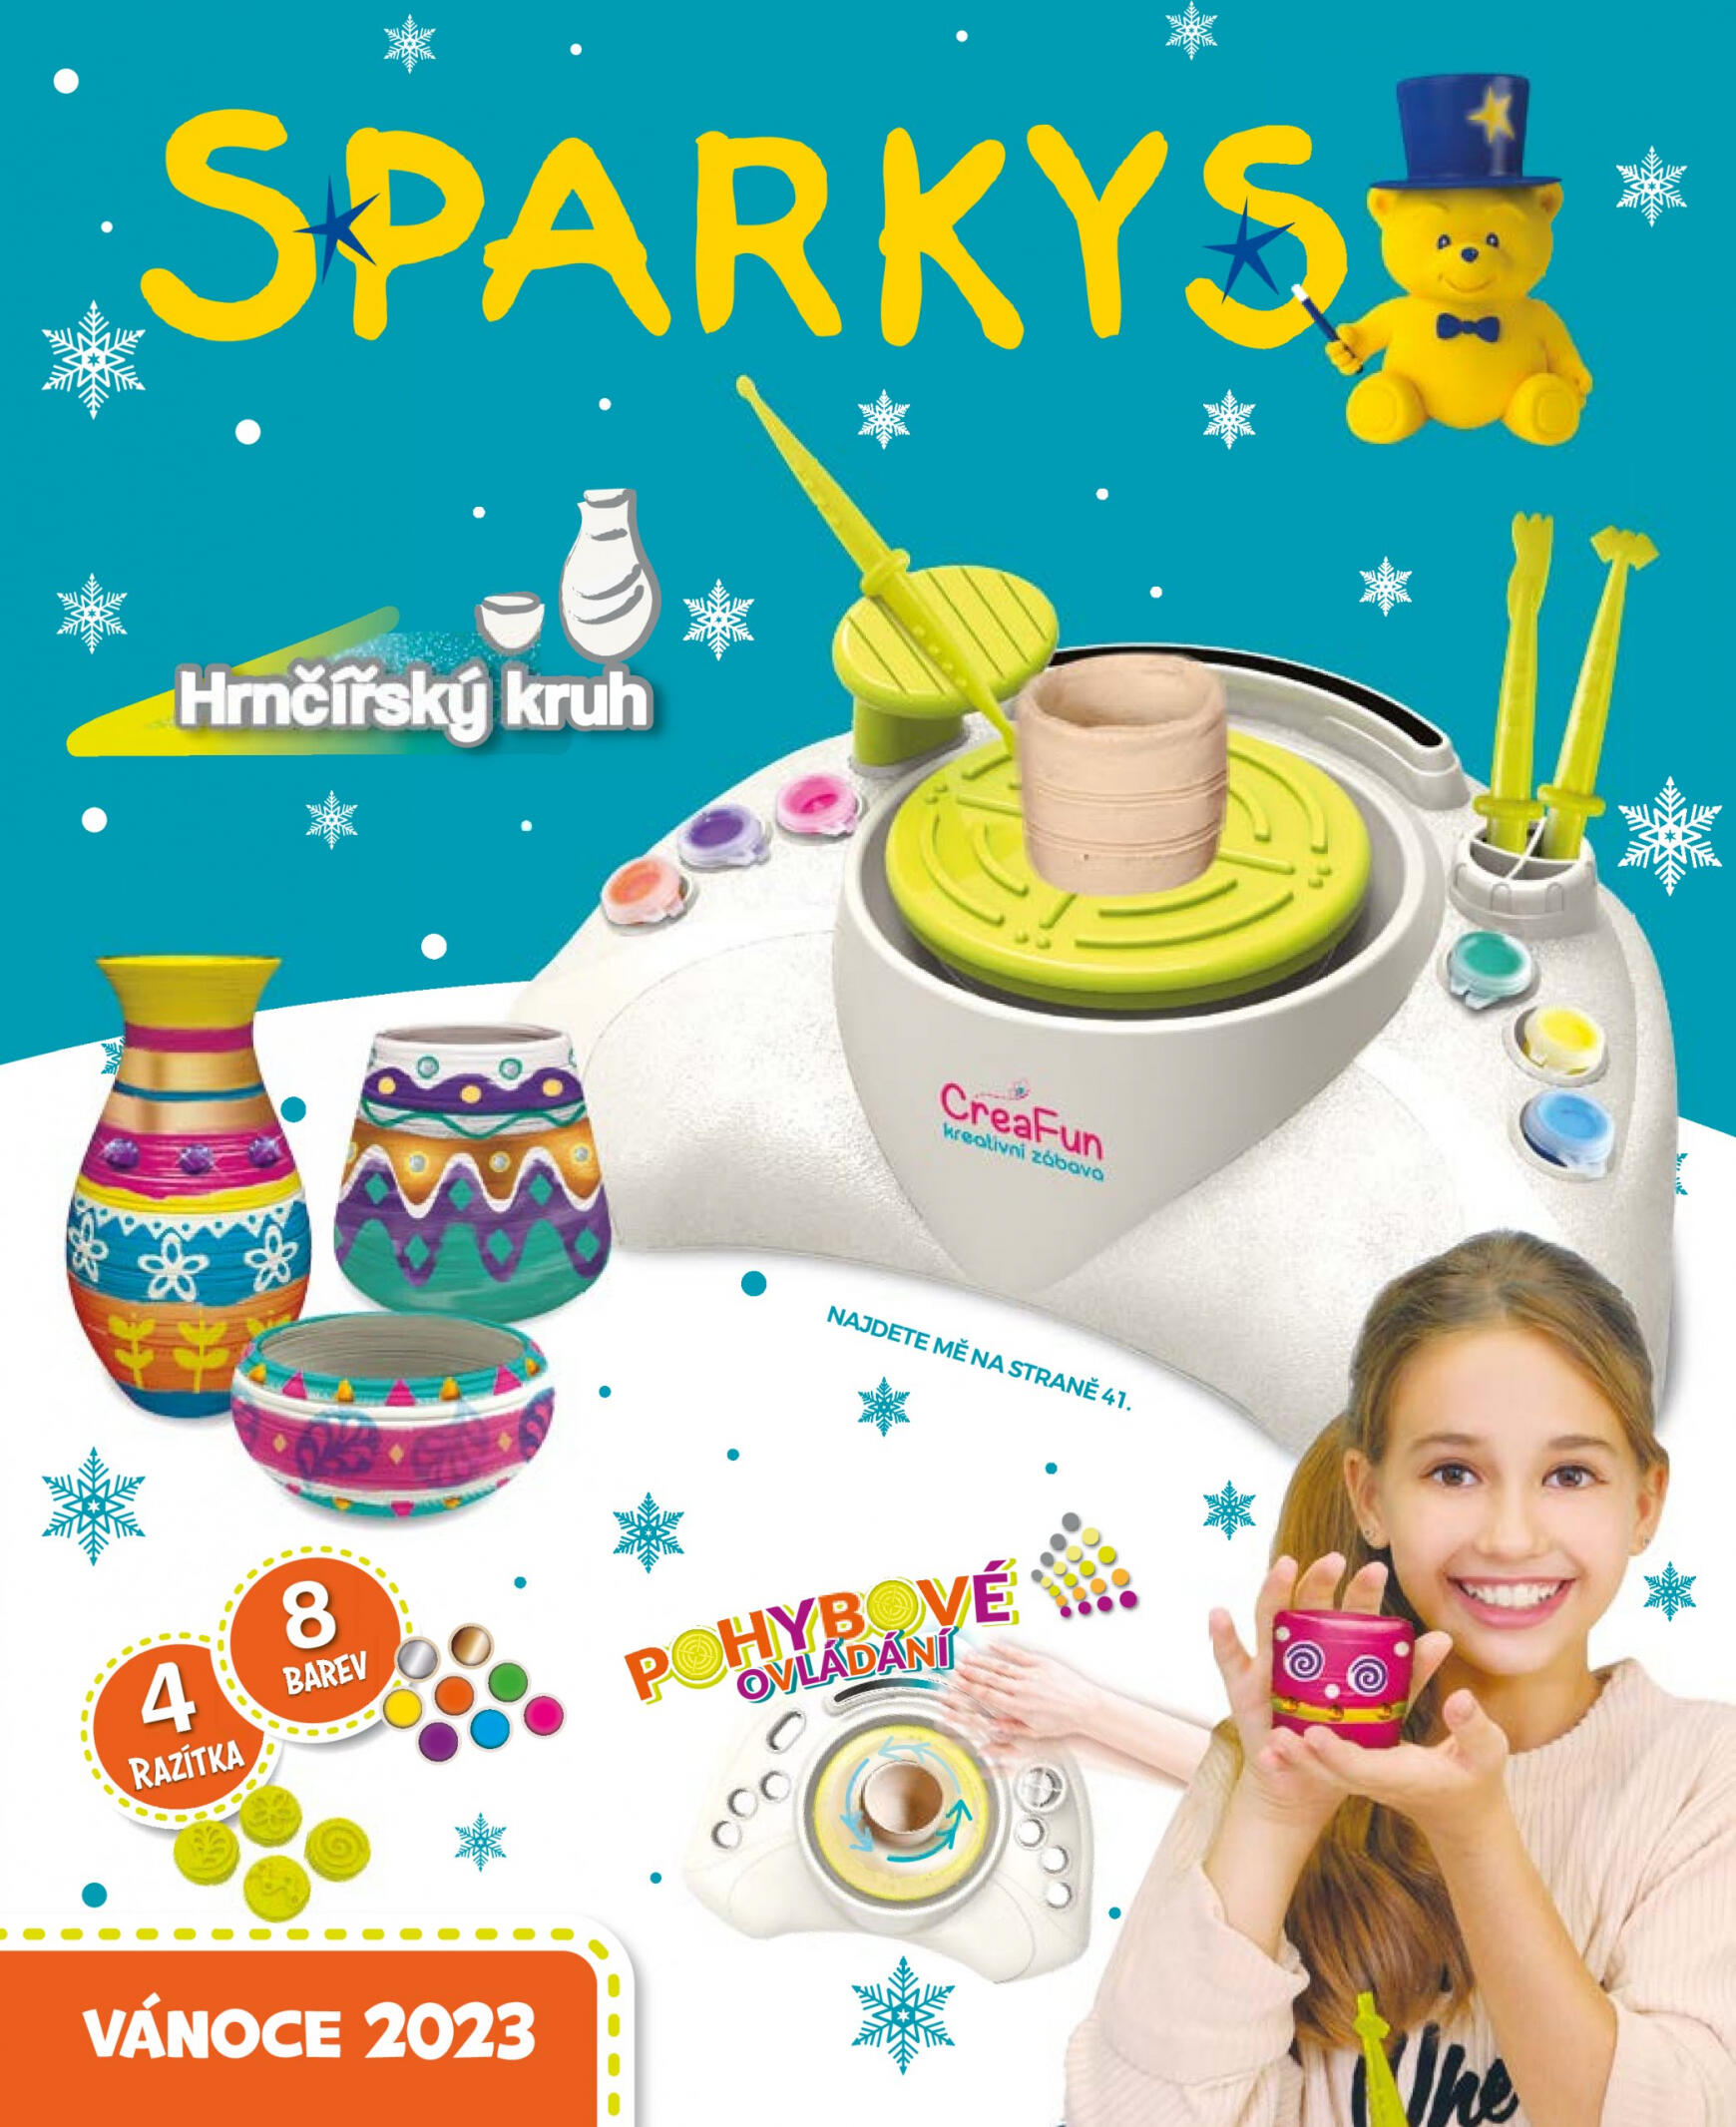 sparkys - Sparkys platný od 01.10.2023 - page: 1